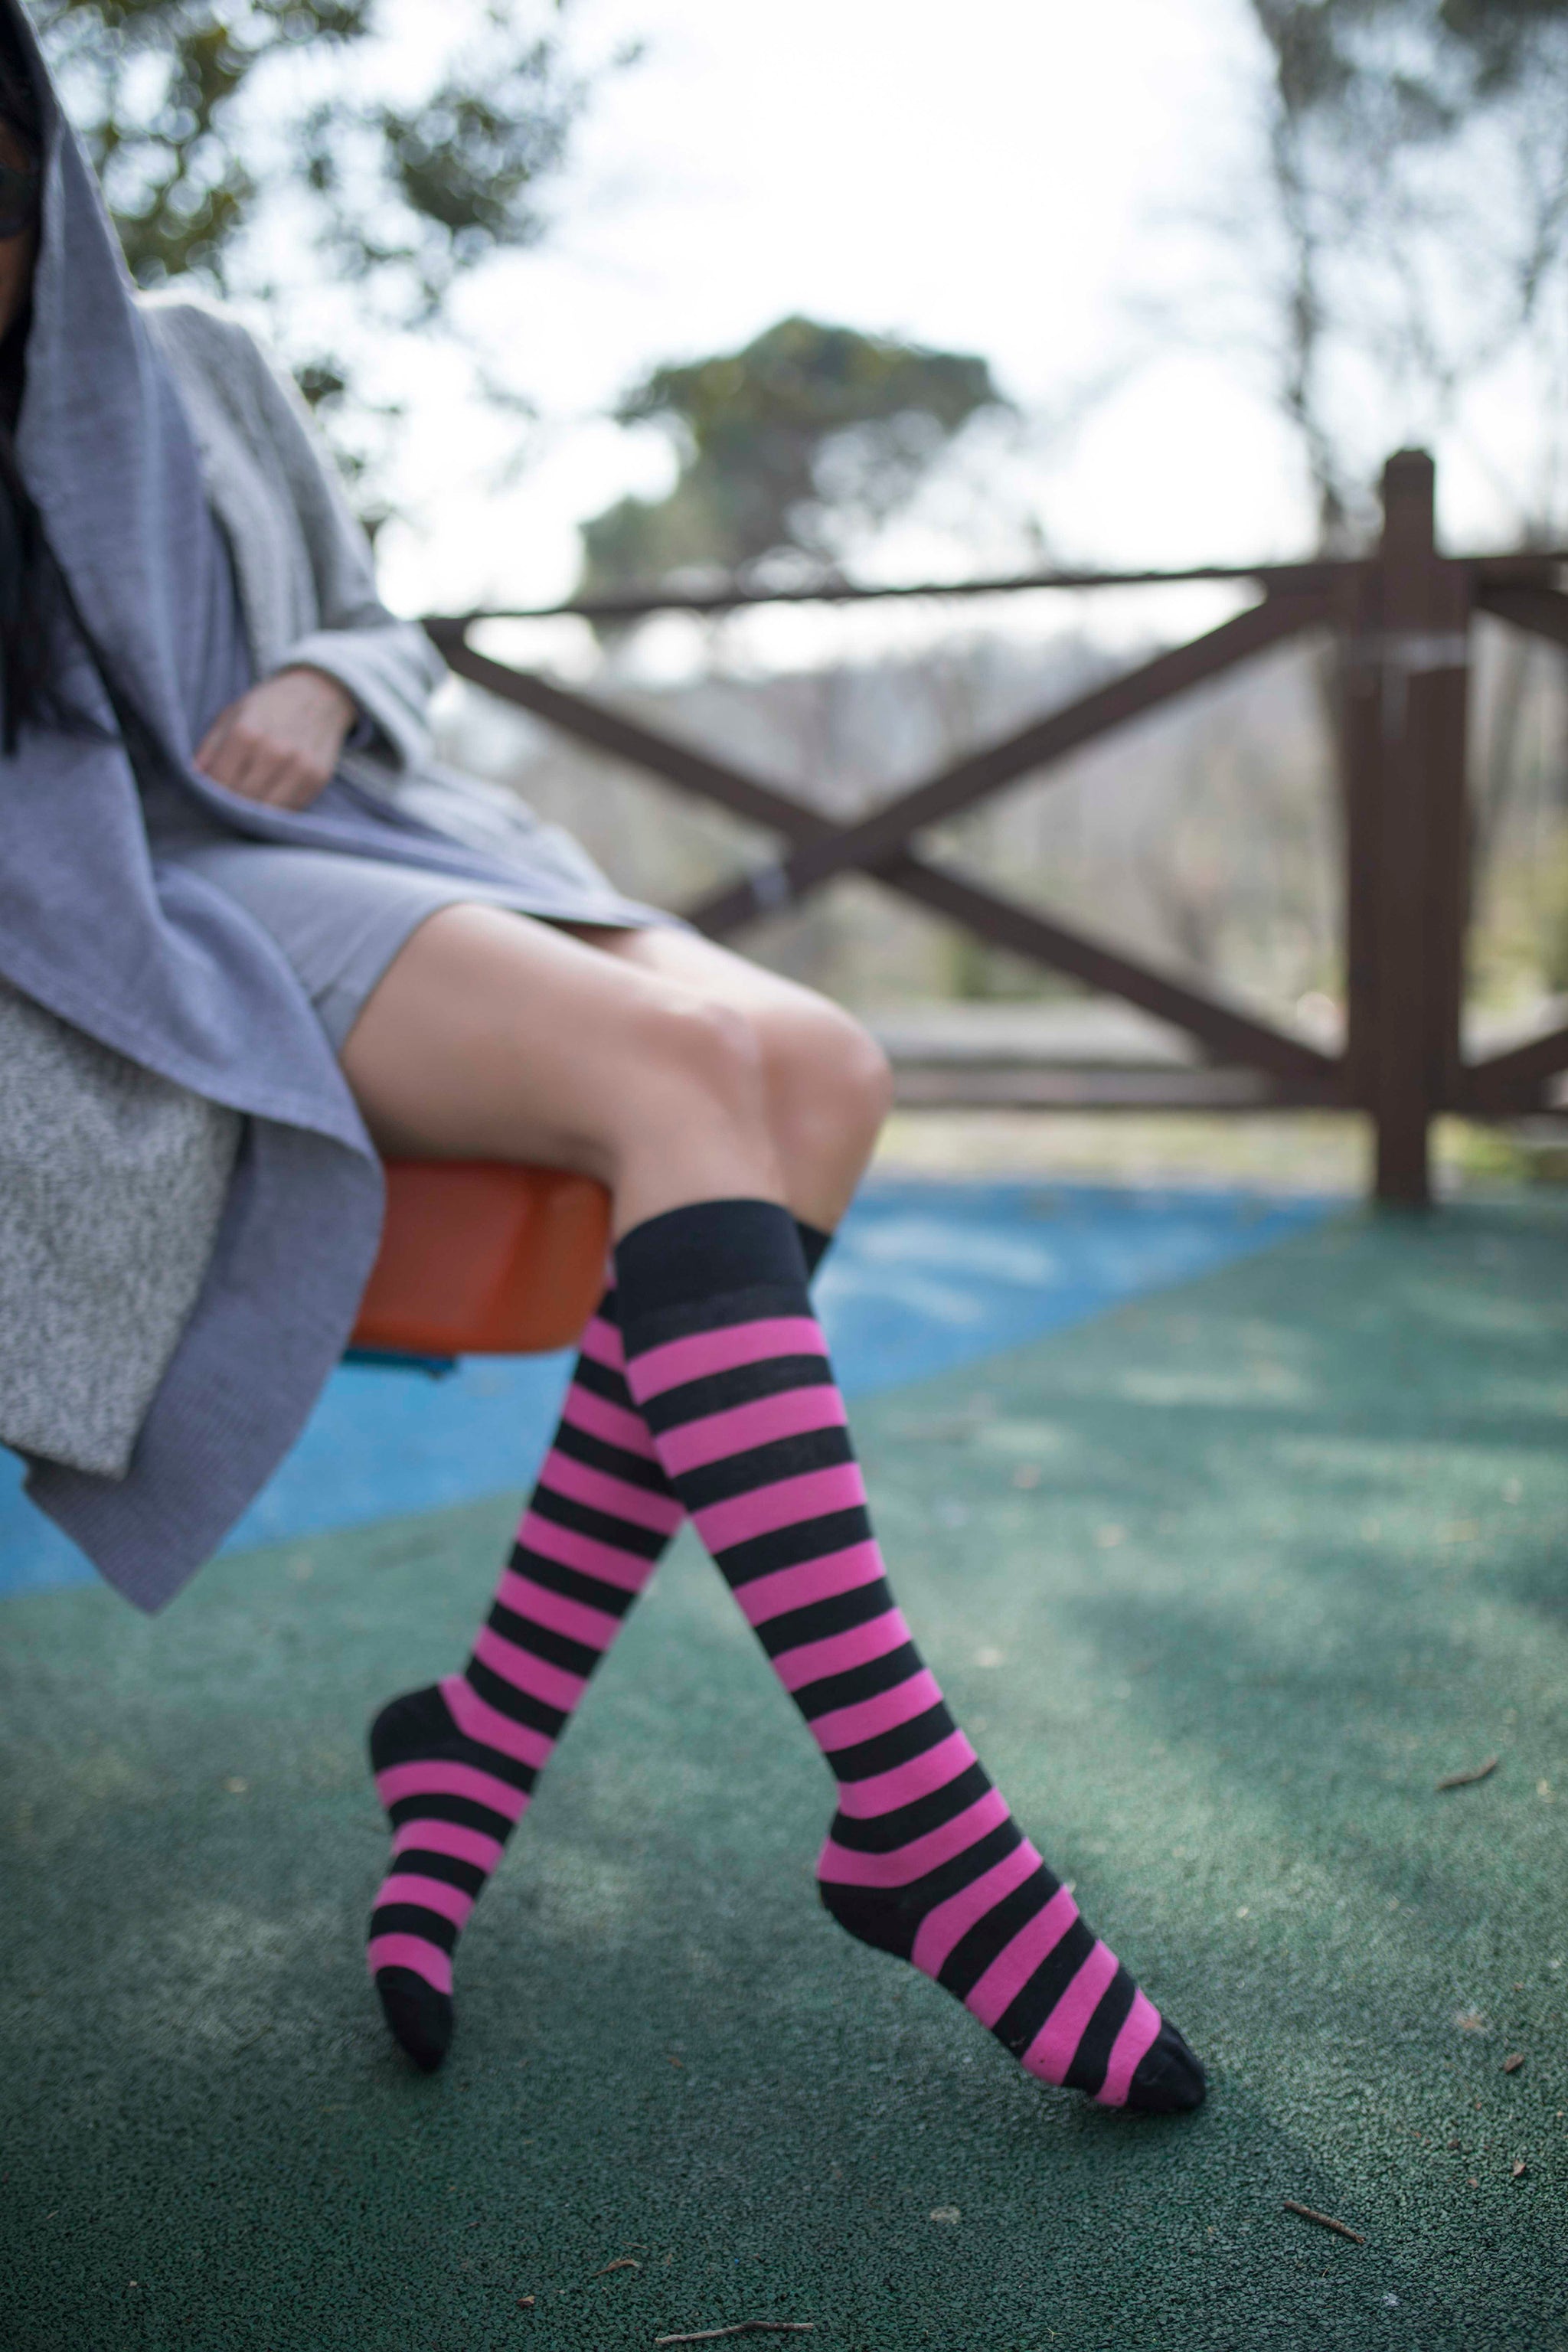 Women's Flamingo Stripe Knee High Socks - Socks n Socks